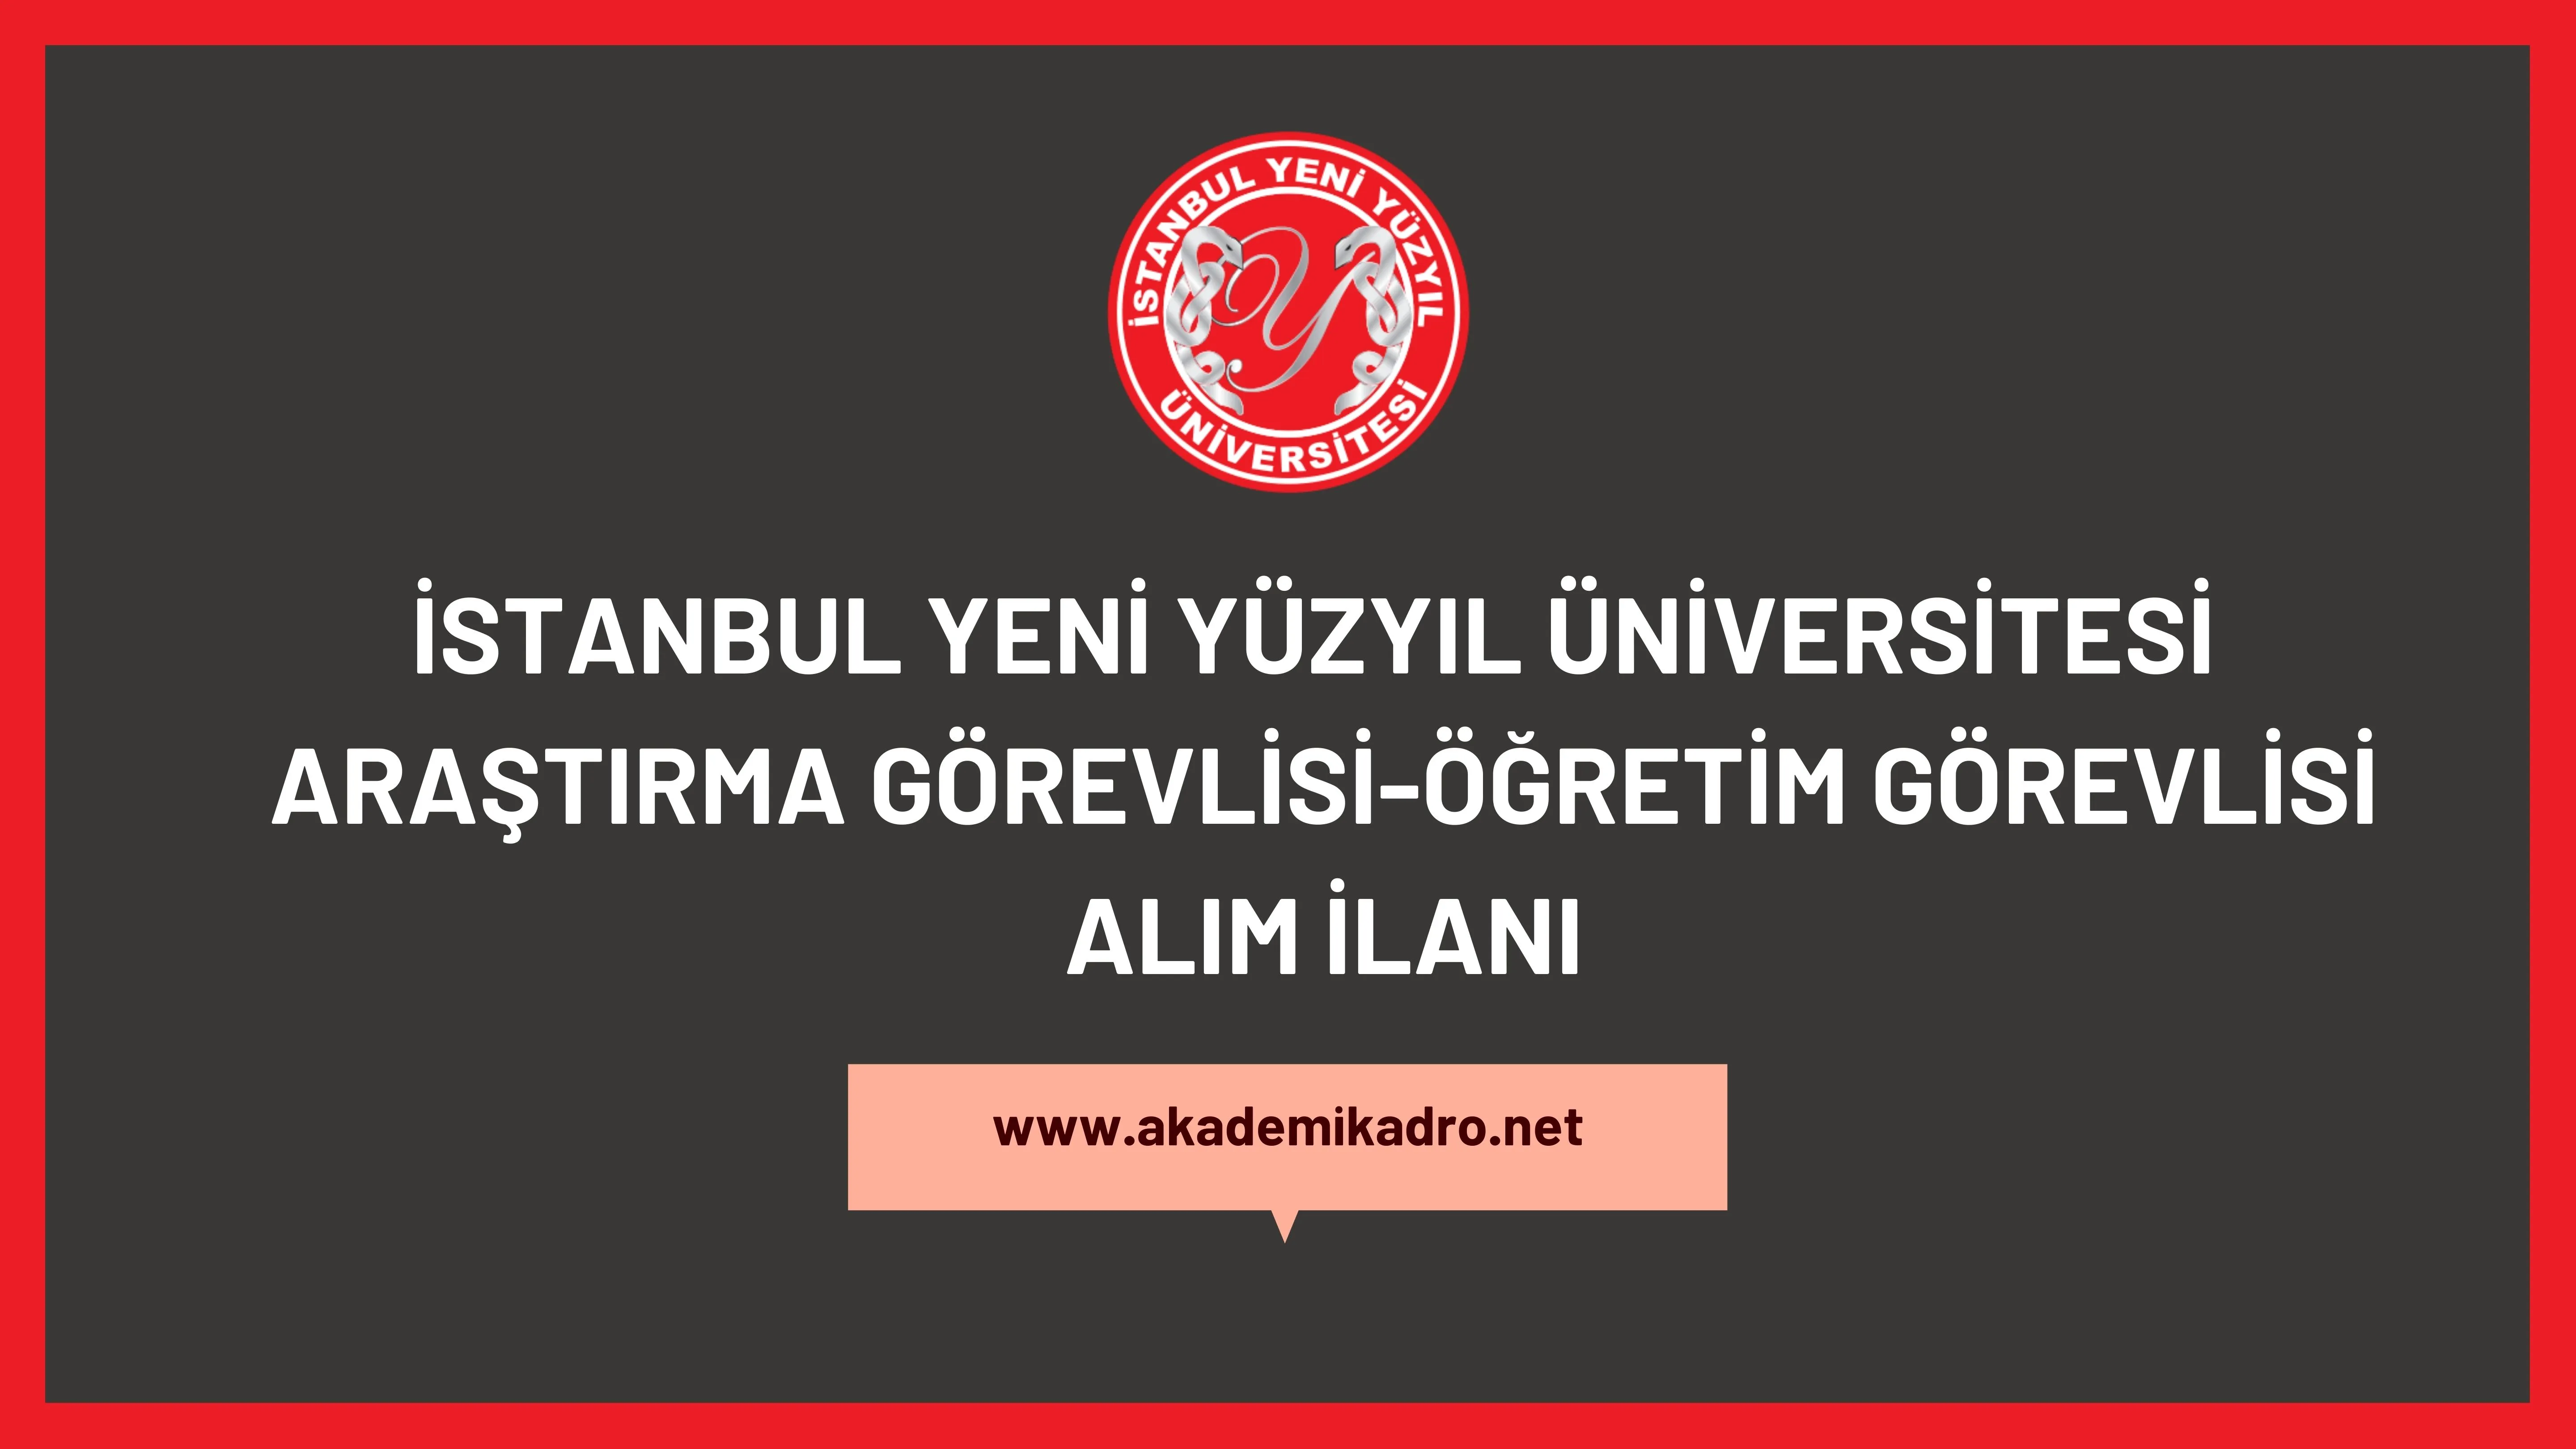 İstanbul Yeni Yüzyıl Üniversitesi 8 Öğretim görevlisi, 2 Araştırma görevlisi ve çok sayıda öğretim üyesi alacaktır.